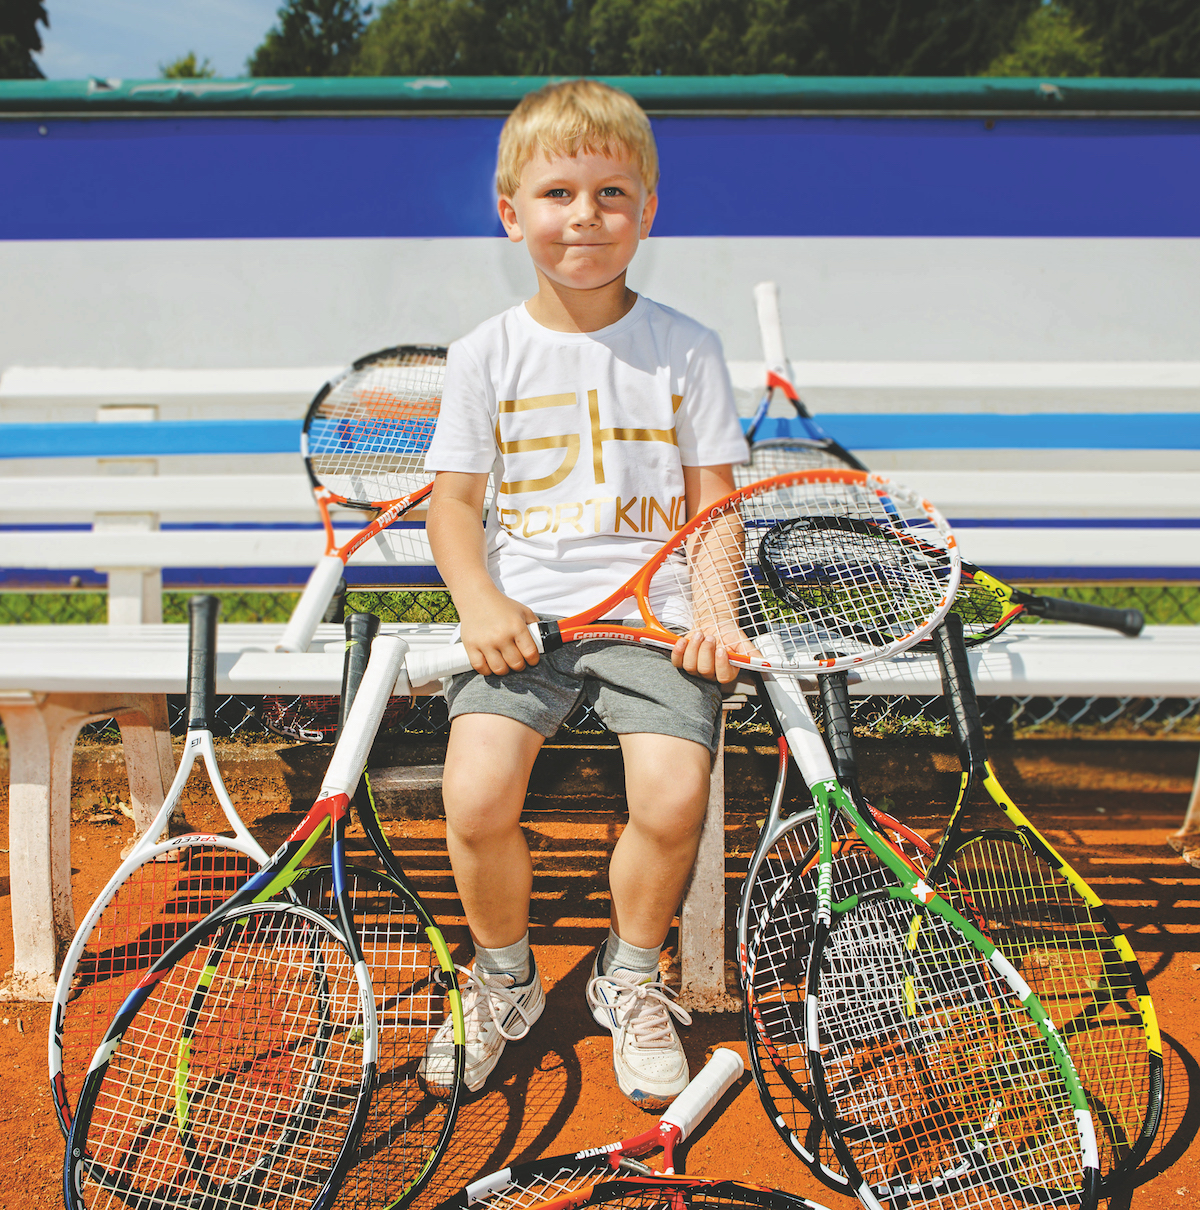 Outdoor Sports Familienspiel  Lernspielzeug Kinder-Tennisschläger 